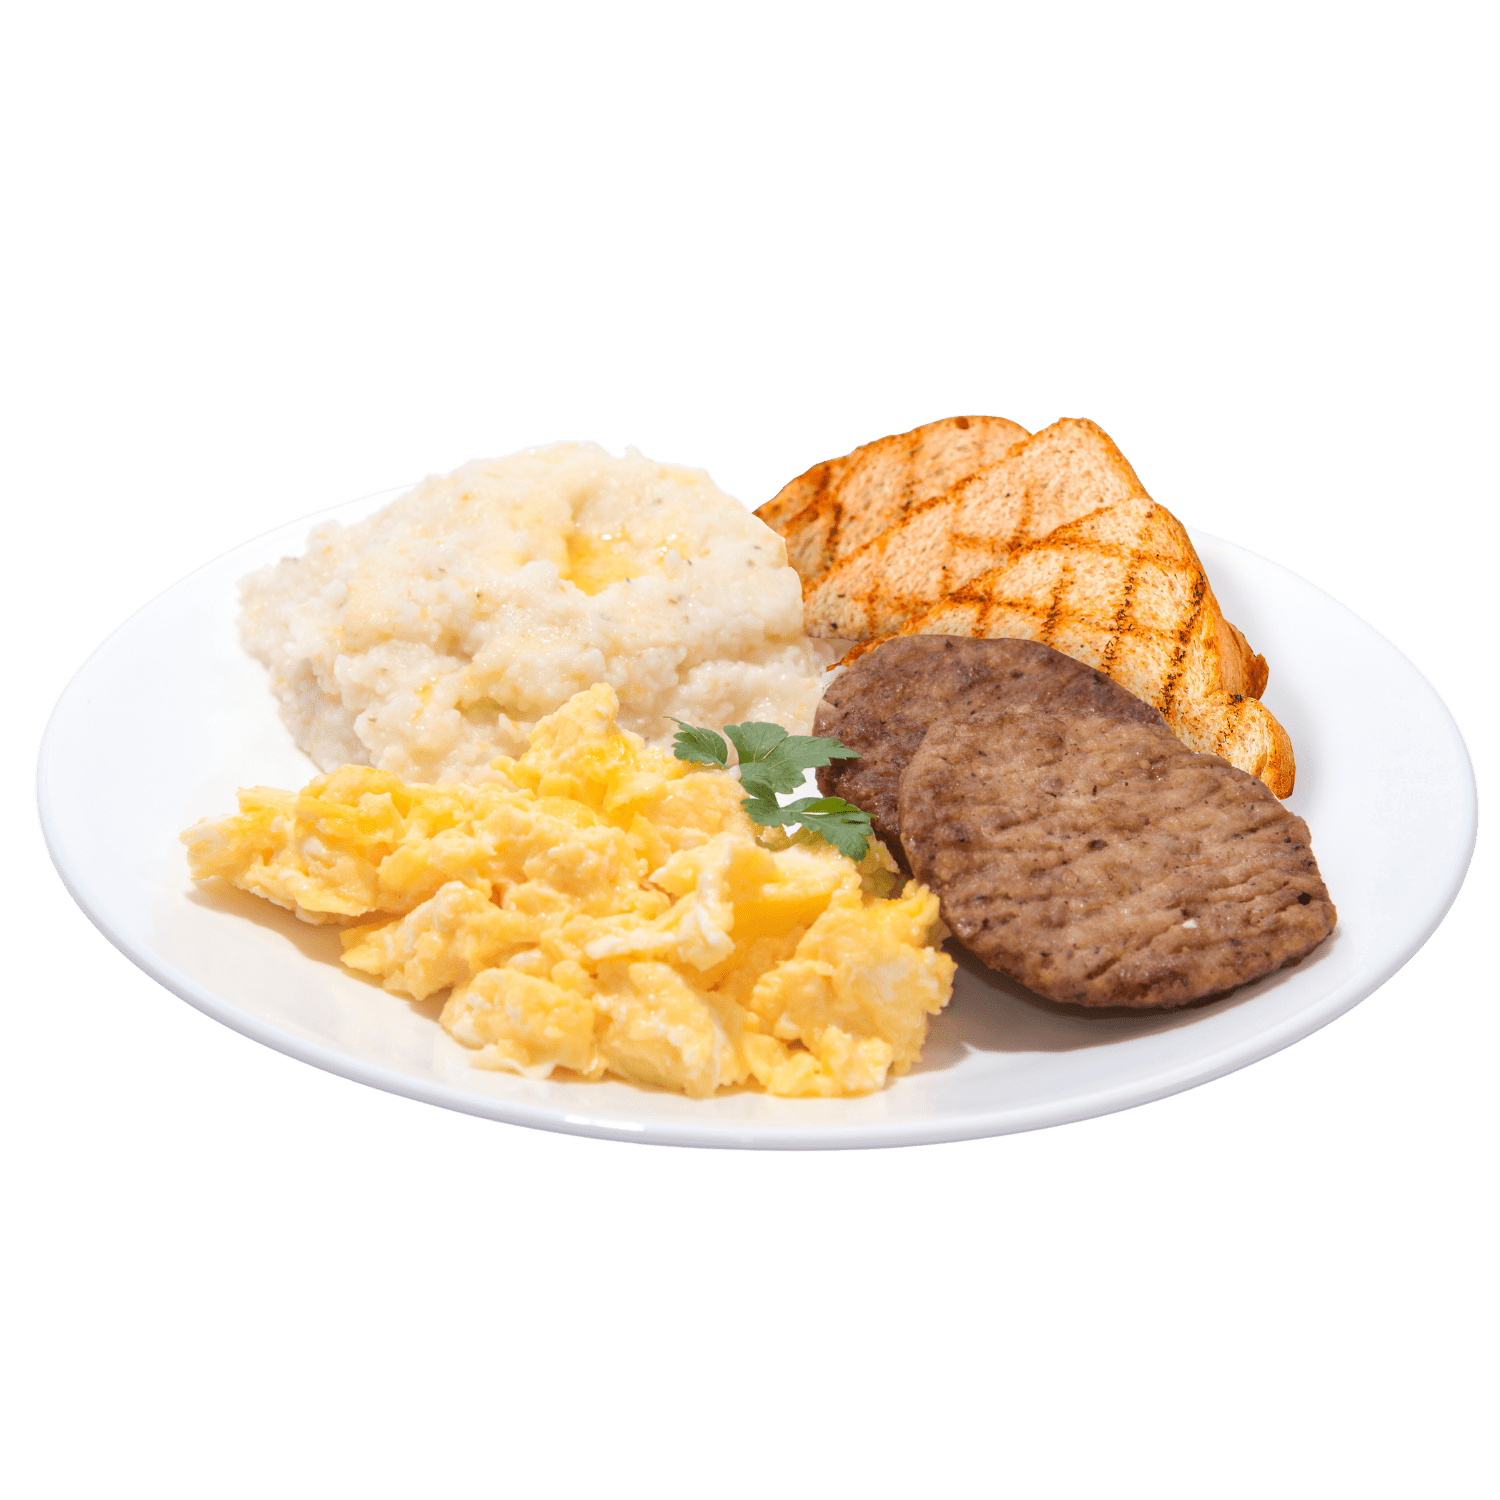 Refuel breakfast plate